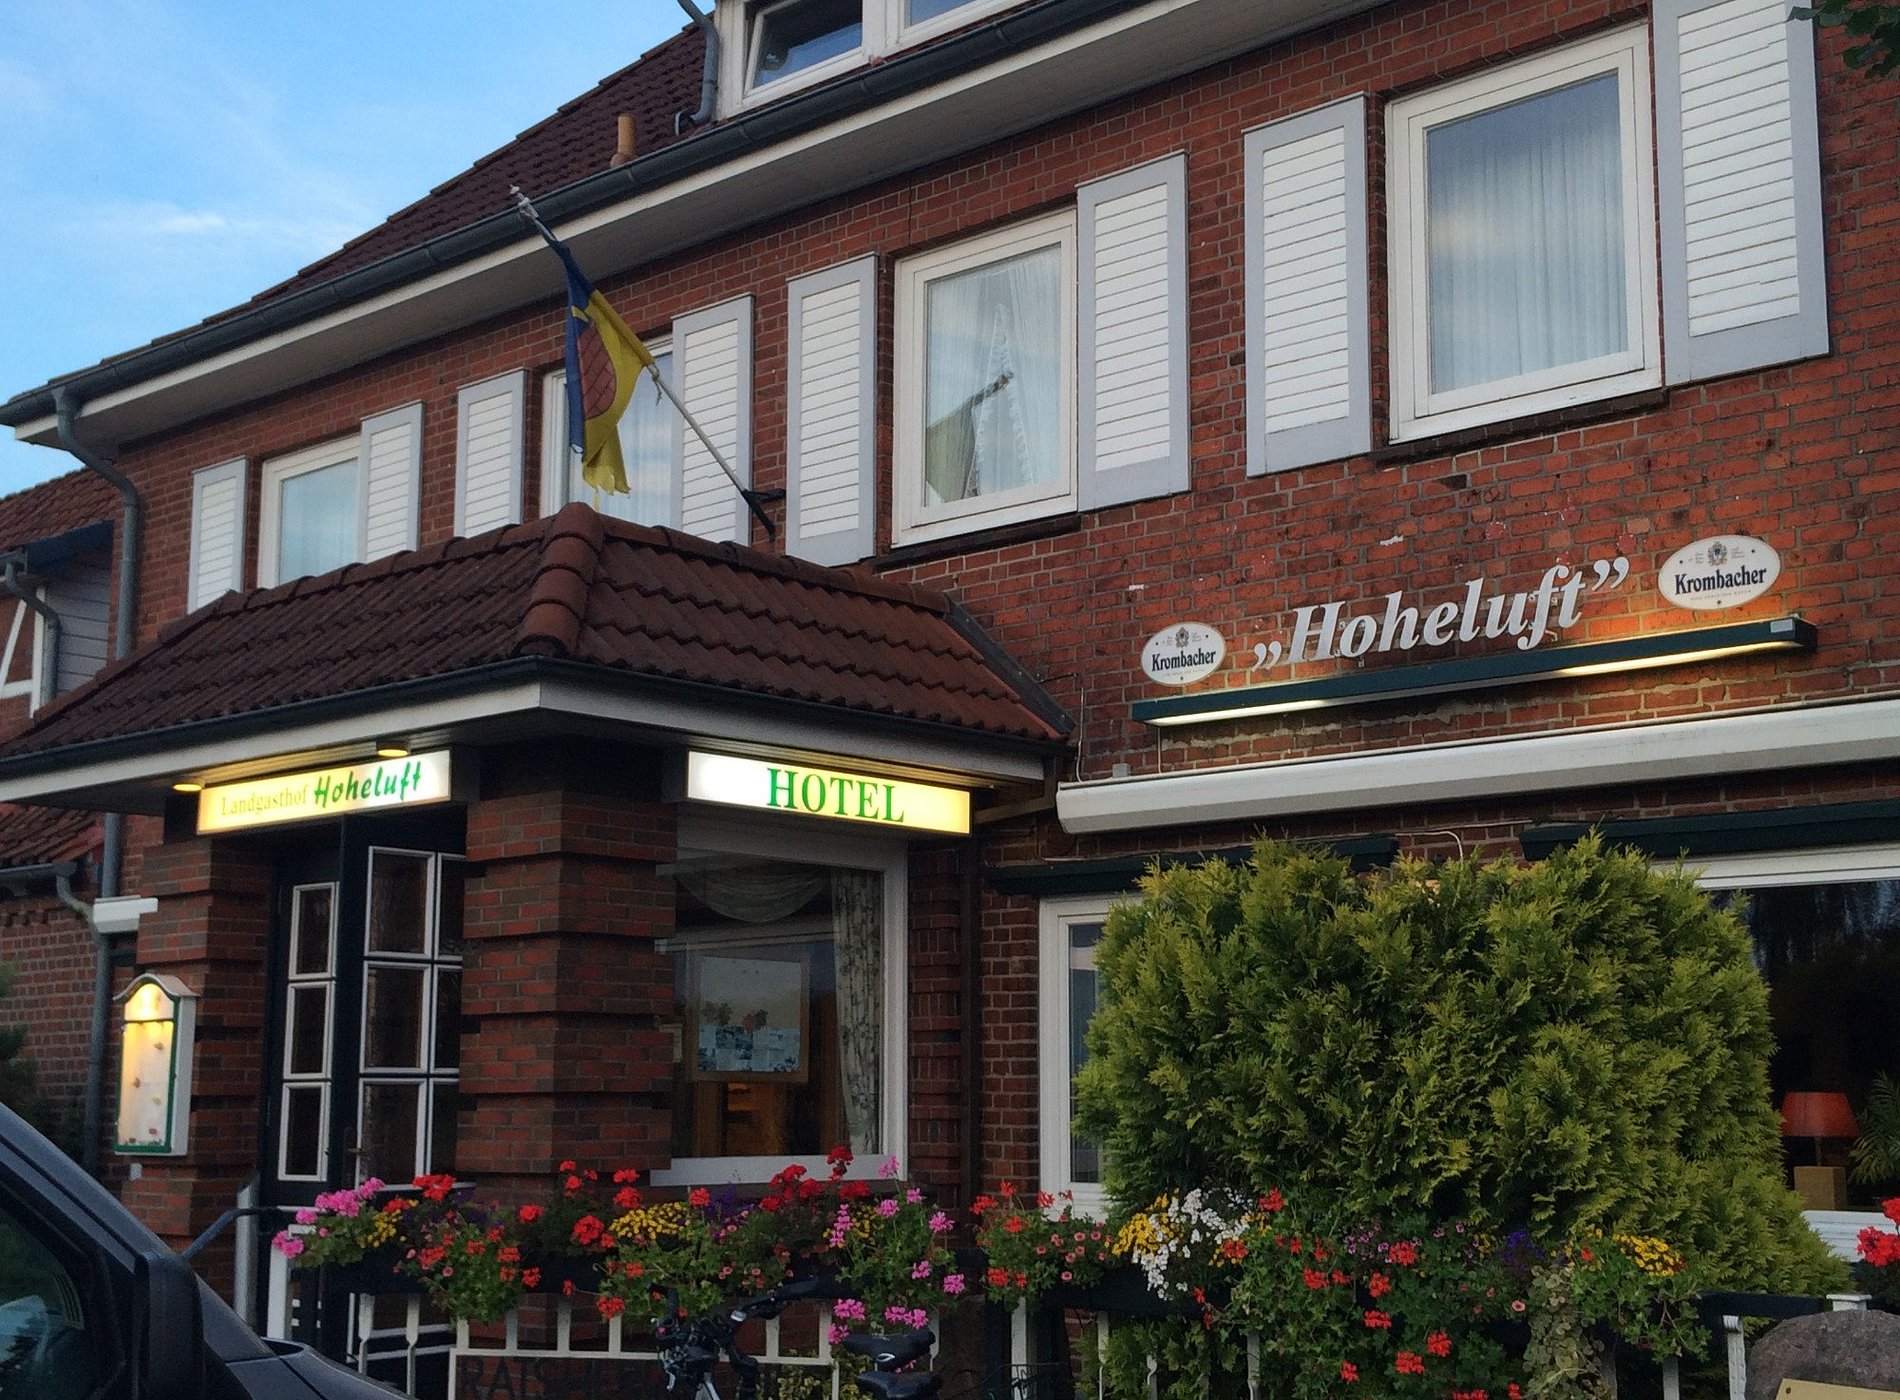 Hotel & Landgasthof "Hoheluft" image